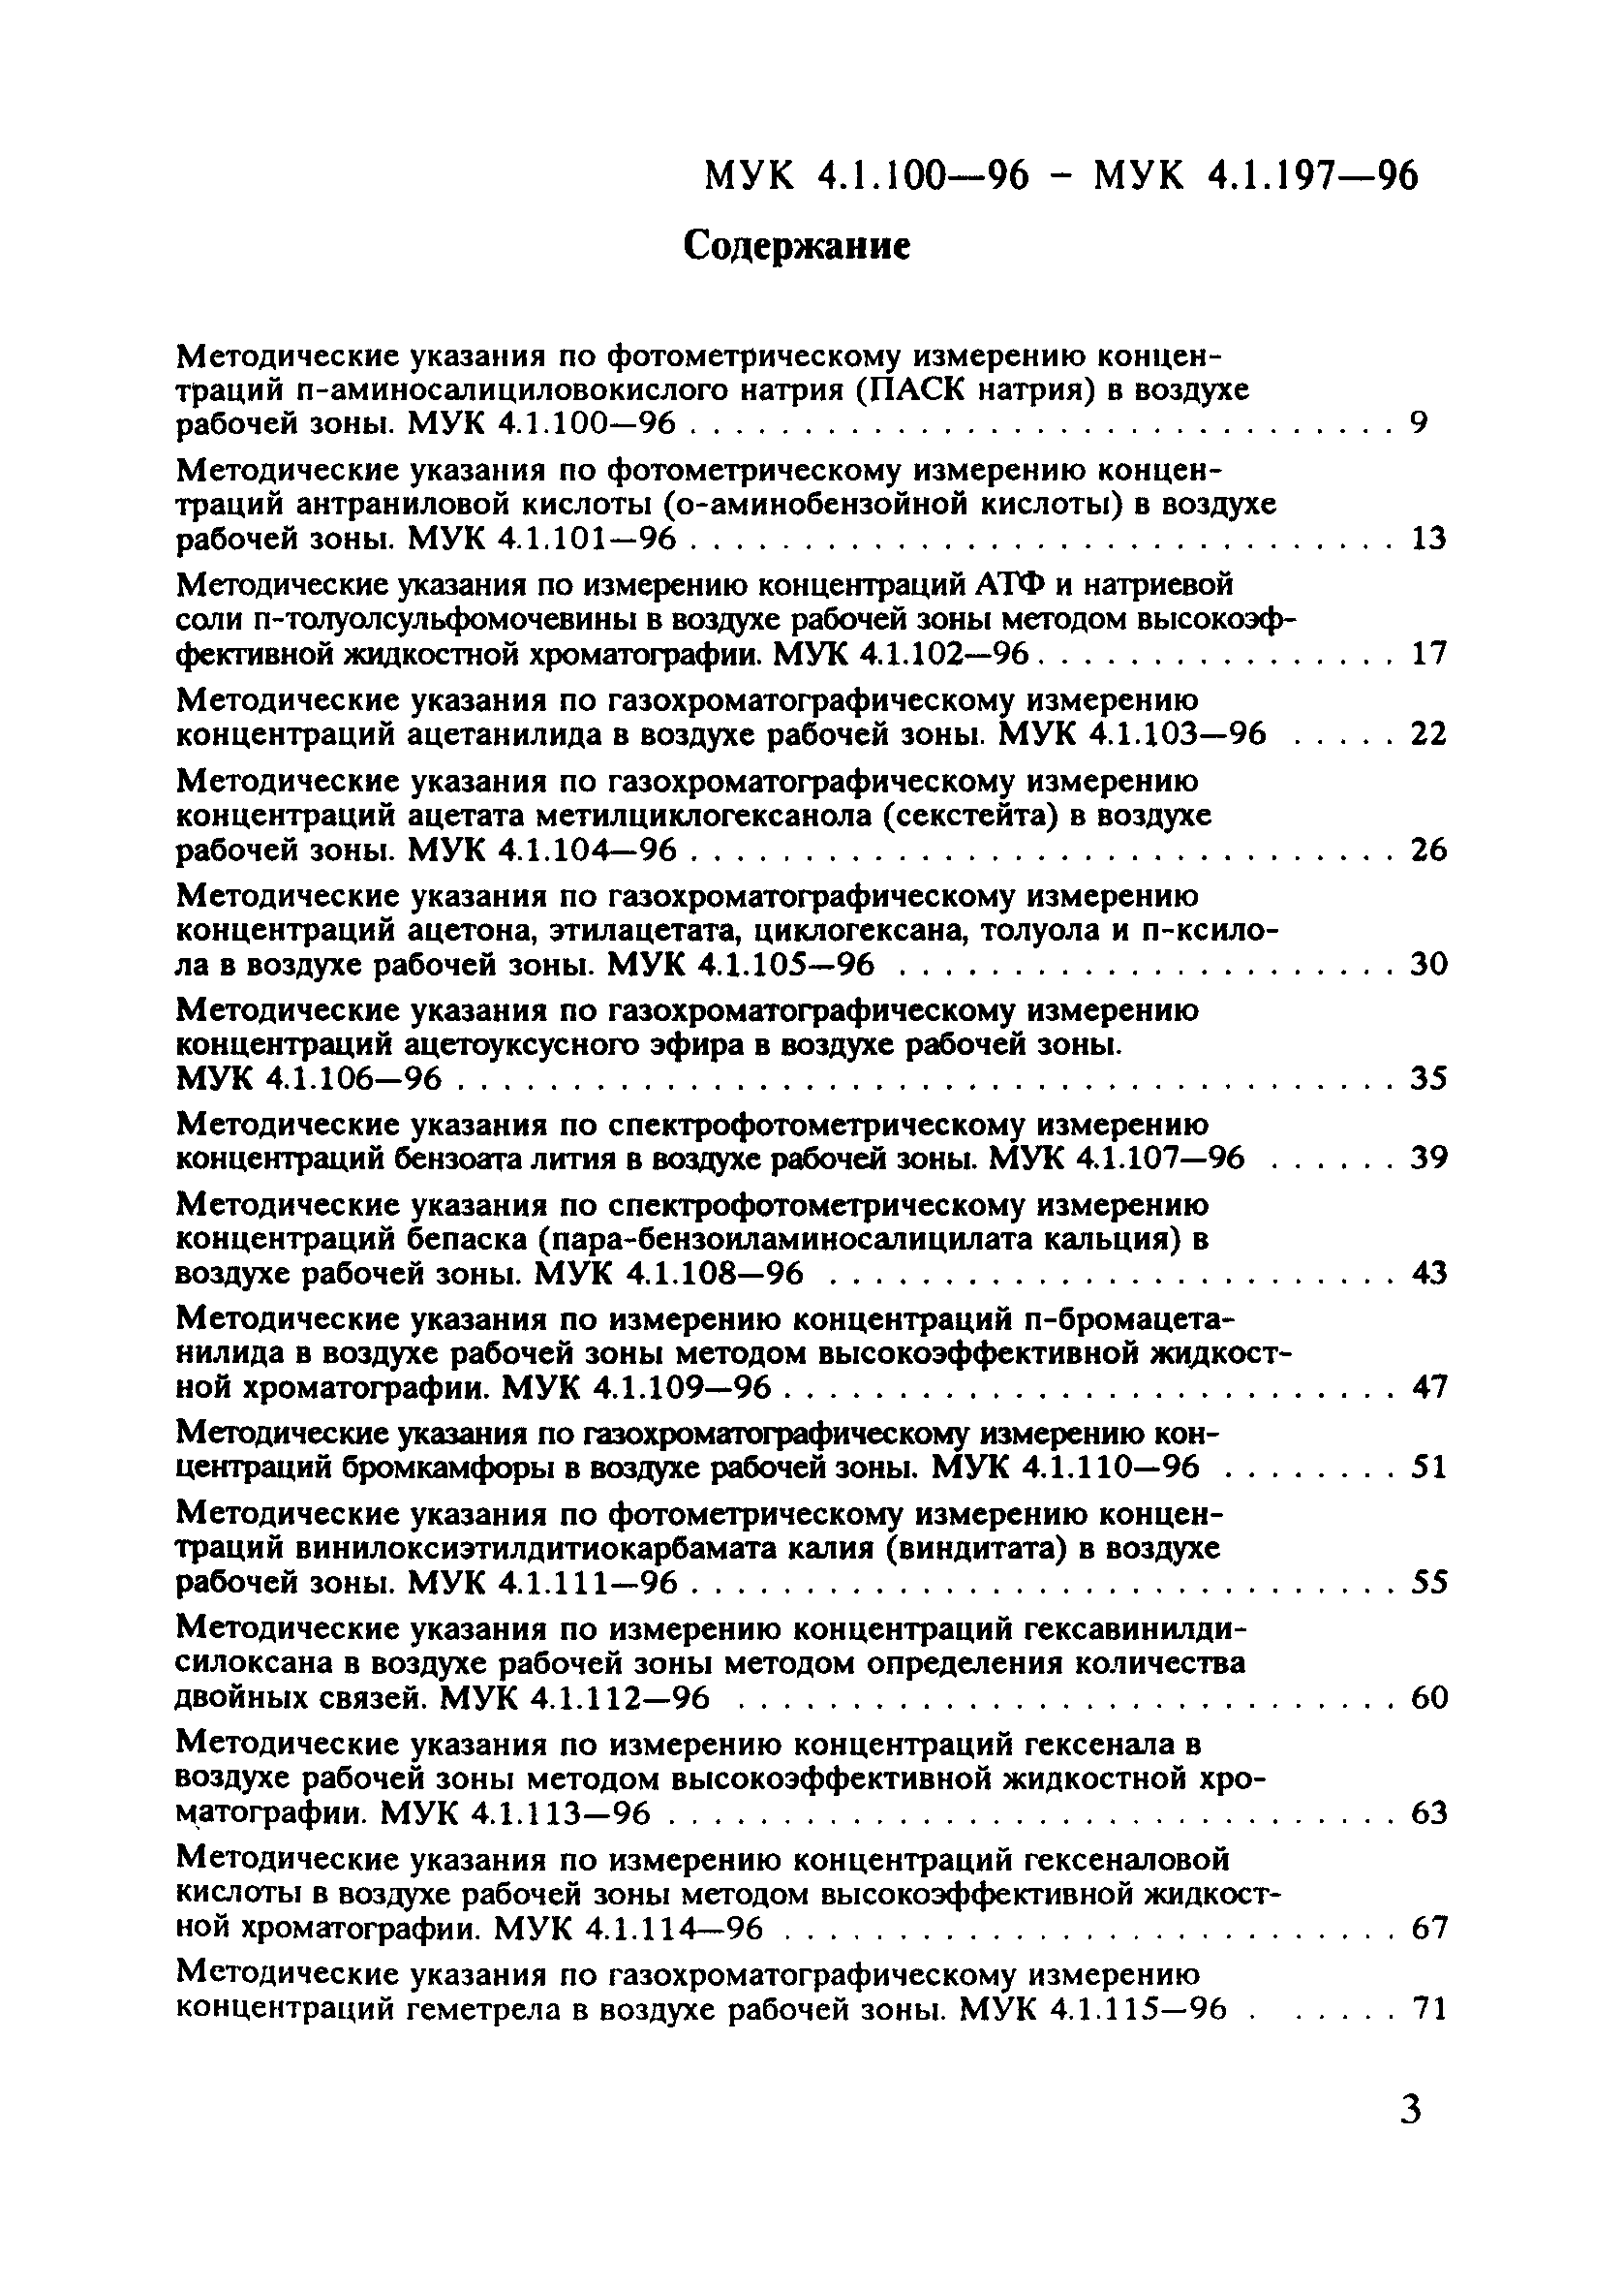 МУК 4.1.114-96